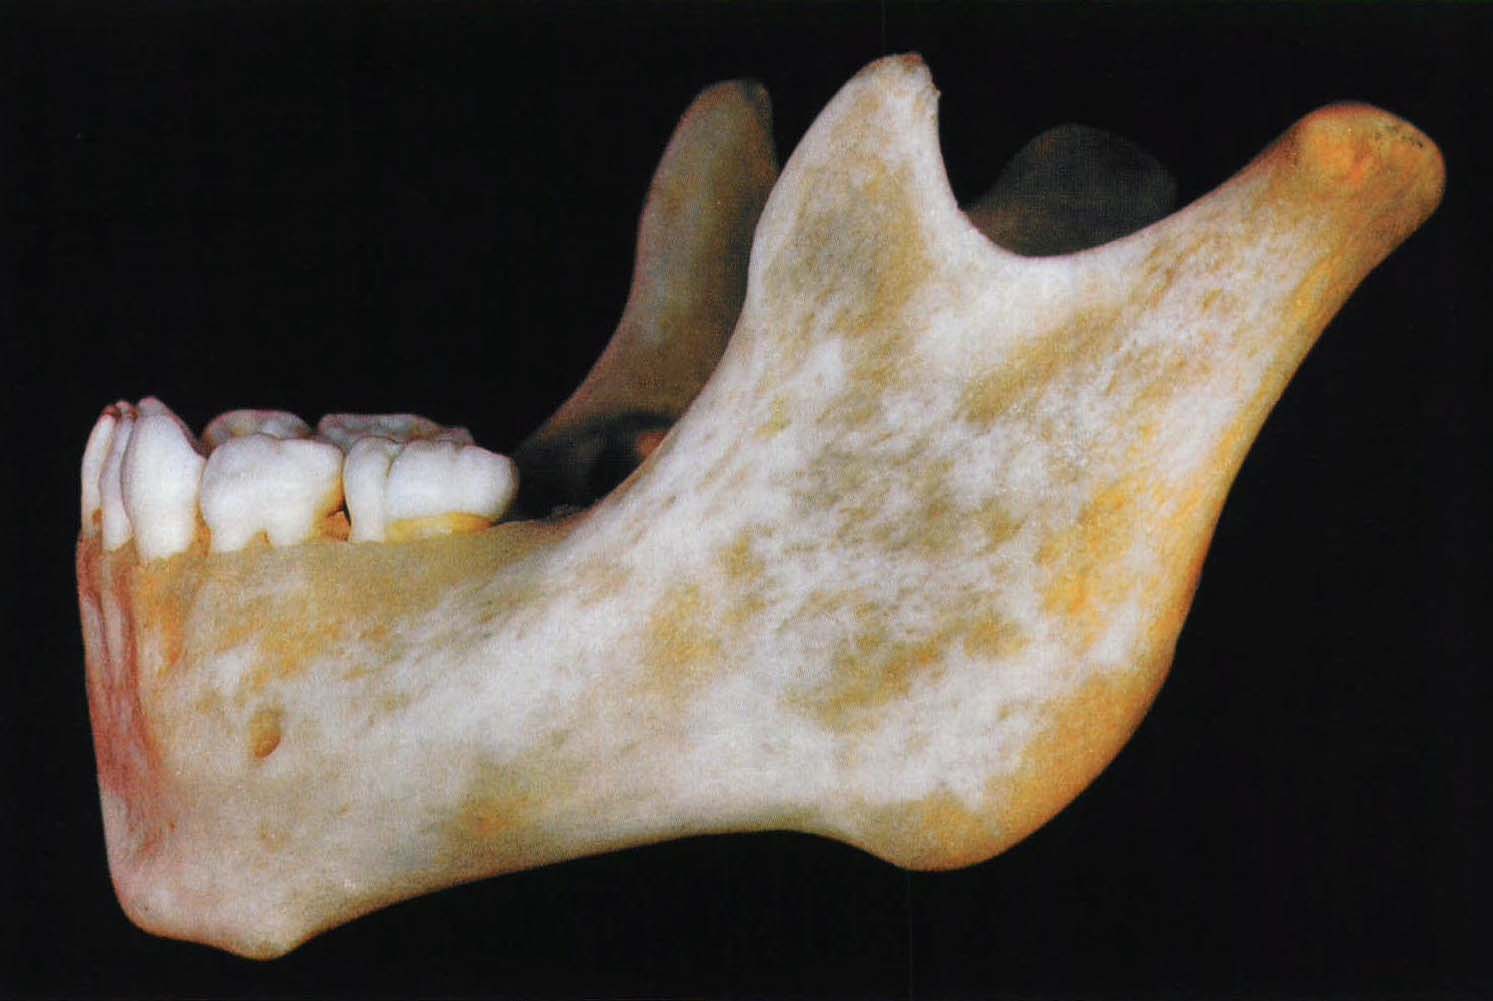 51. 由幼至老下颌骨形态的改变 (2)